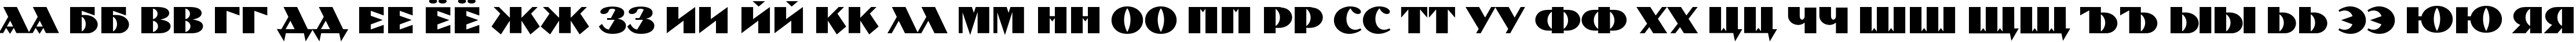 Пример написания русского алфавита шрифтом Pilotka